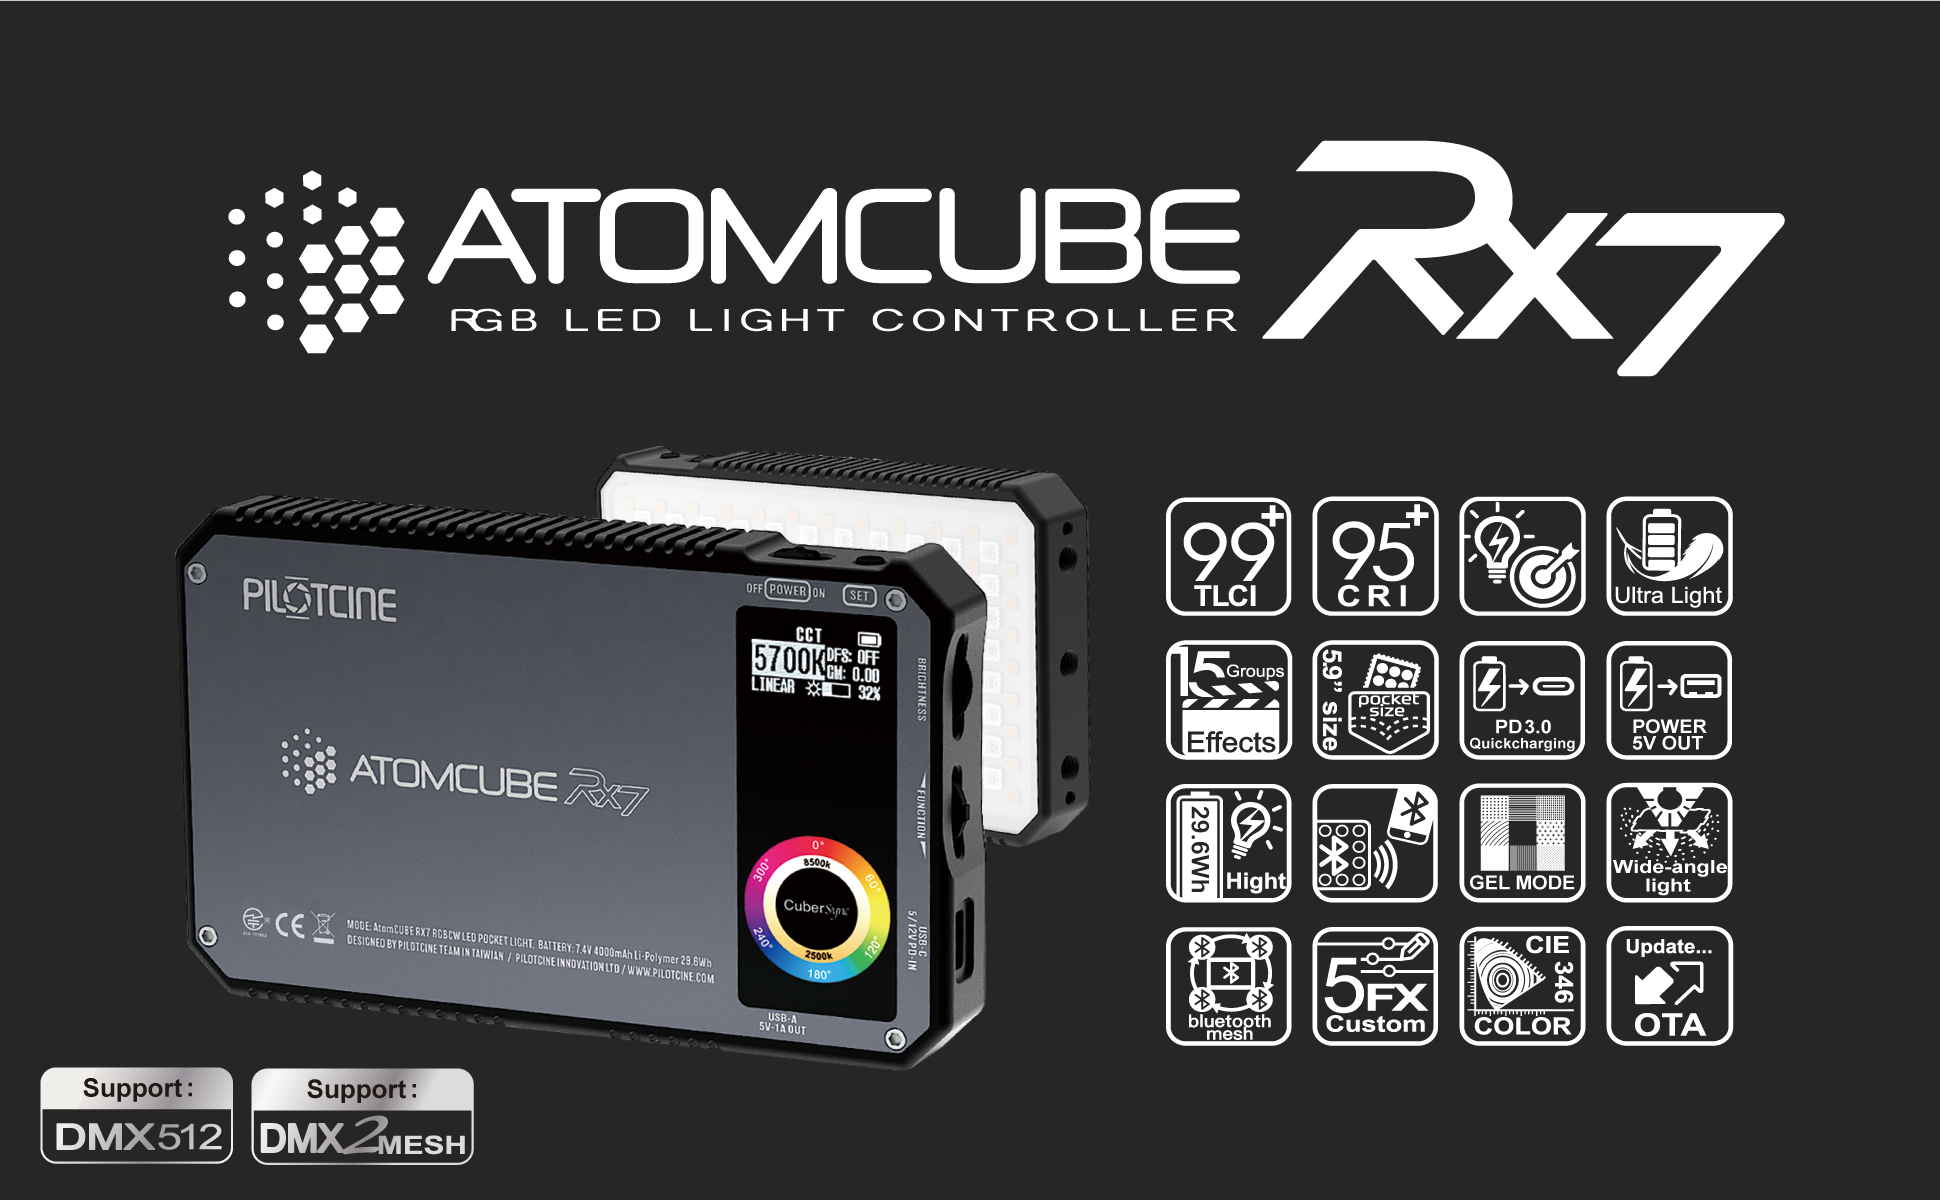 Atomcube RX7 5.9